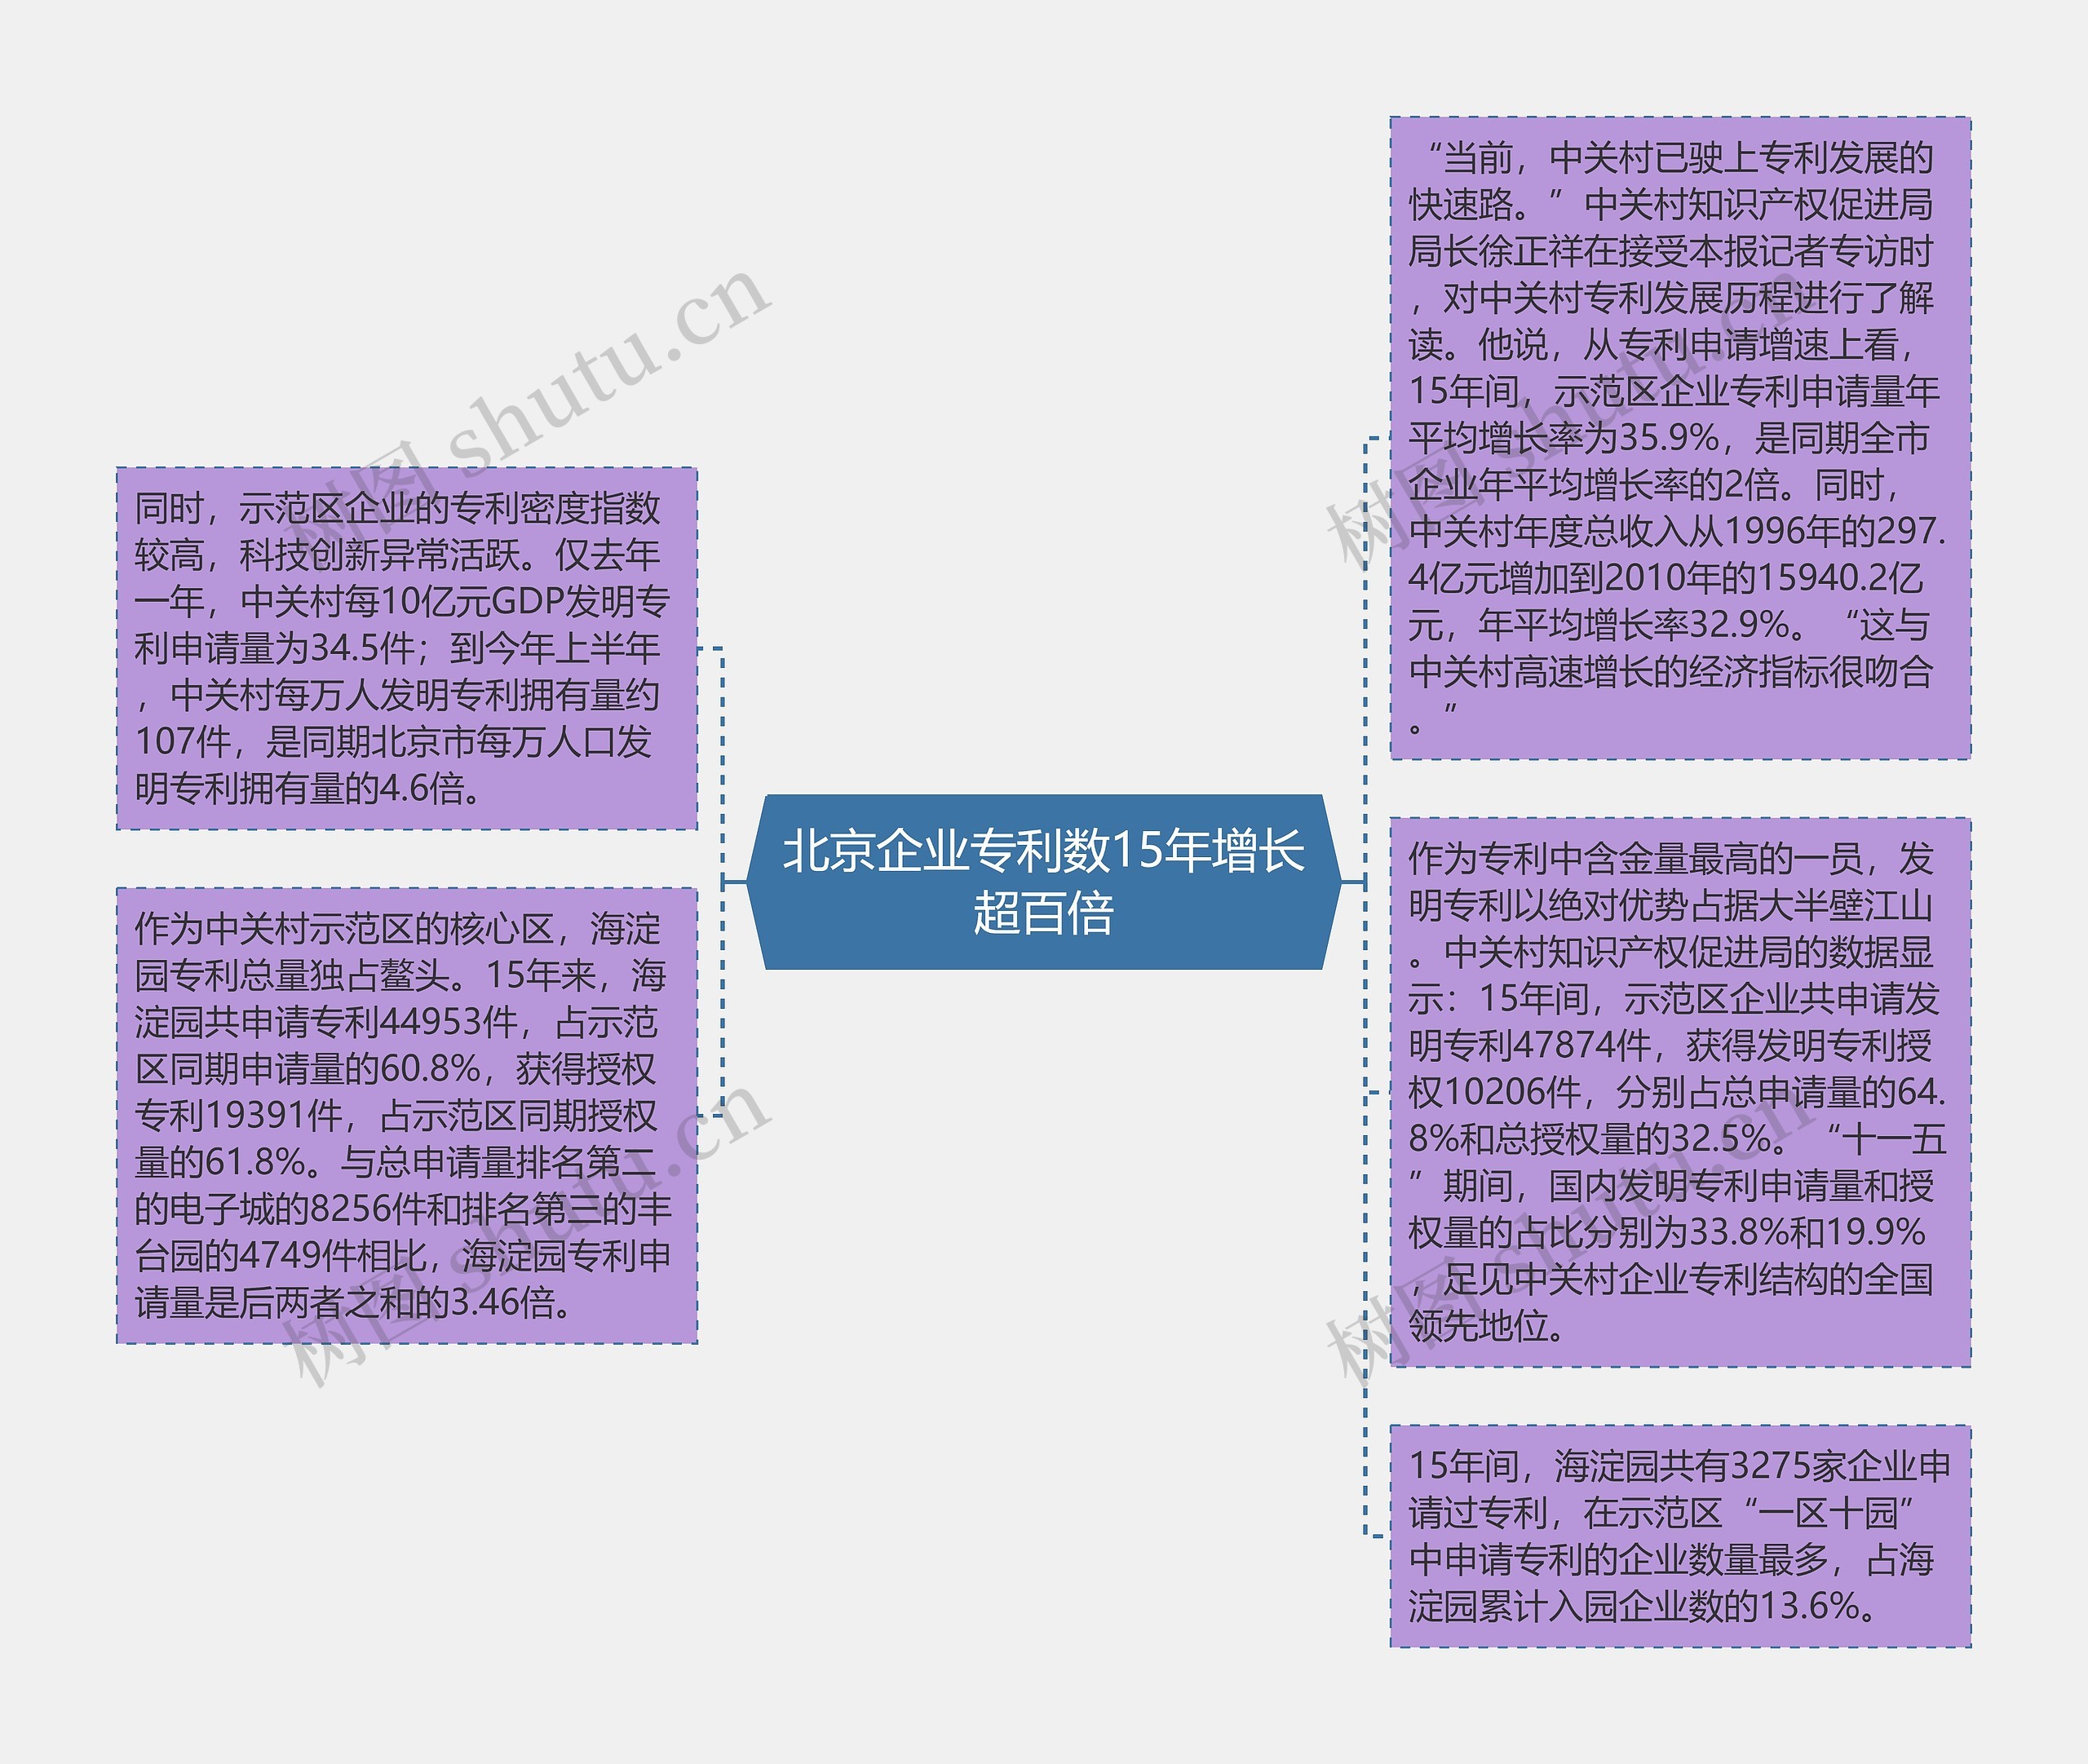 北京企业专利数15年增长超百倍思维导图